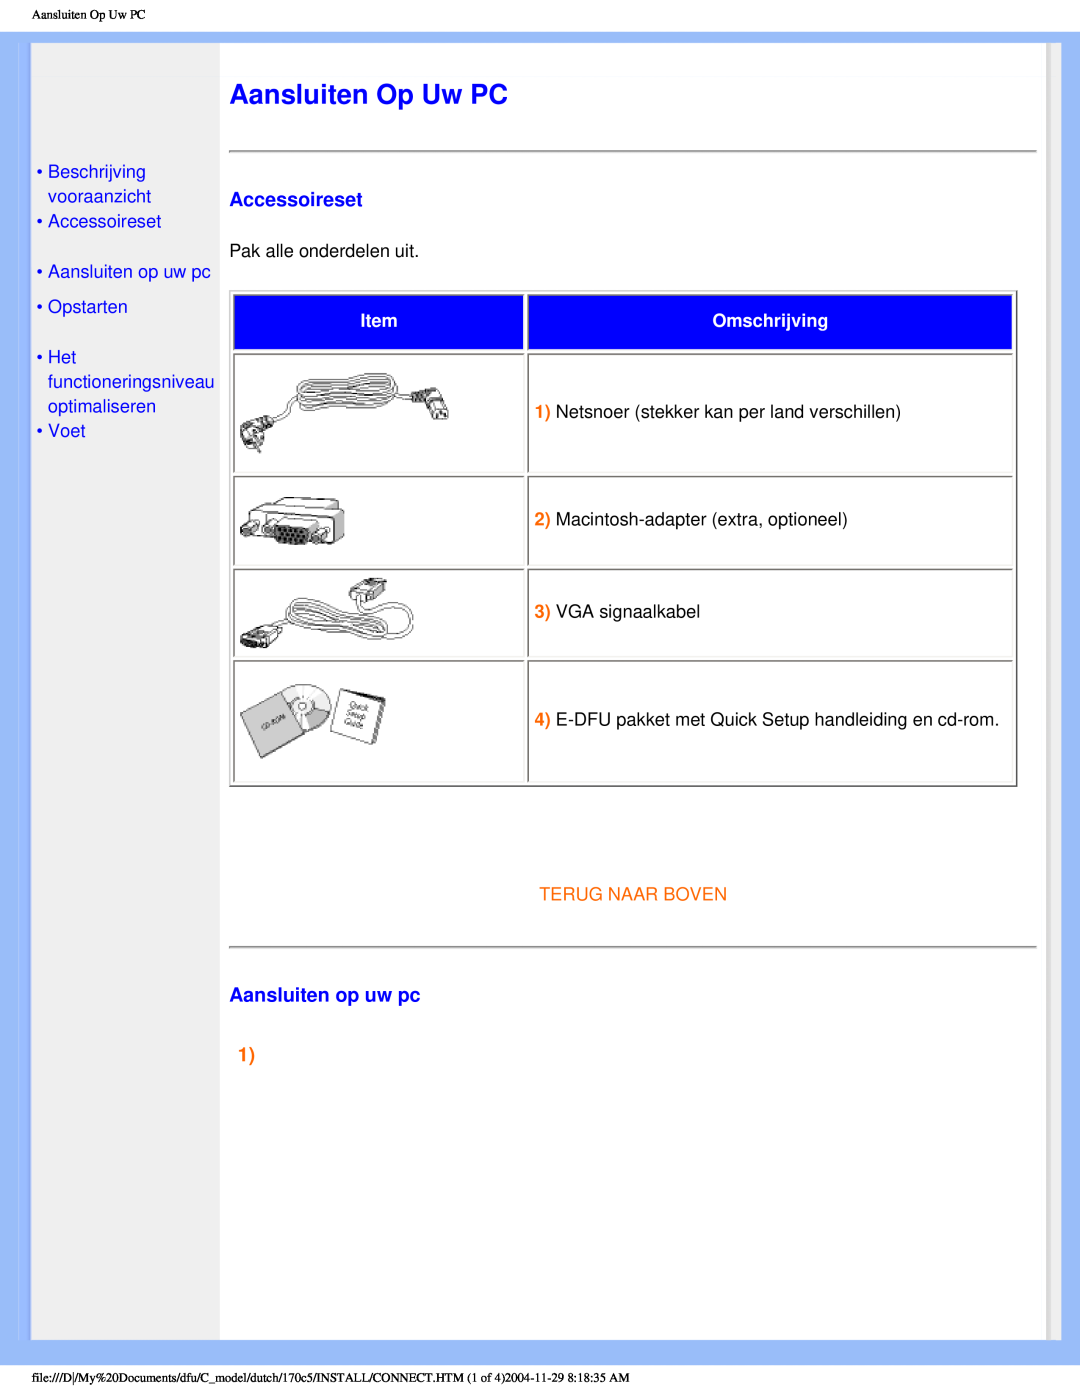 Philips 170C5 user manual Aansluiten Op Uw PC, Accessoireset, Aansluiten op uw pc, Voet, Omschrijving, Terug Naar Boven 